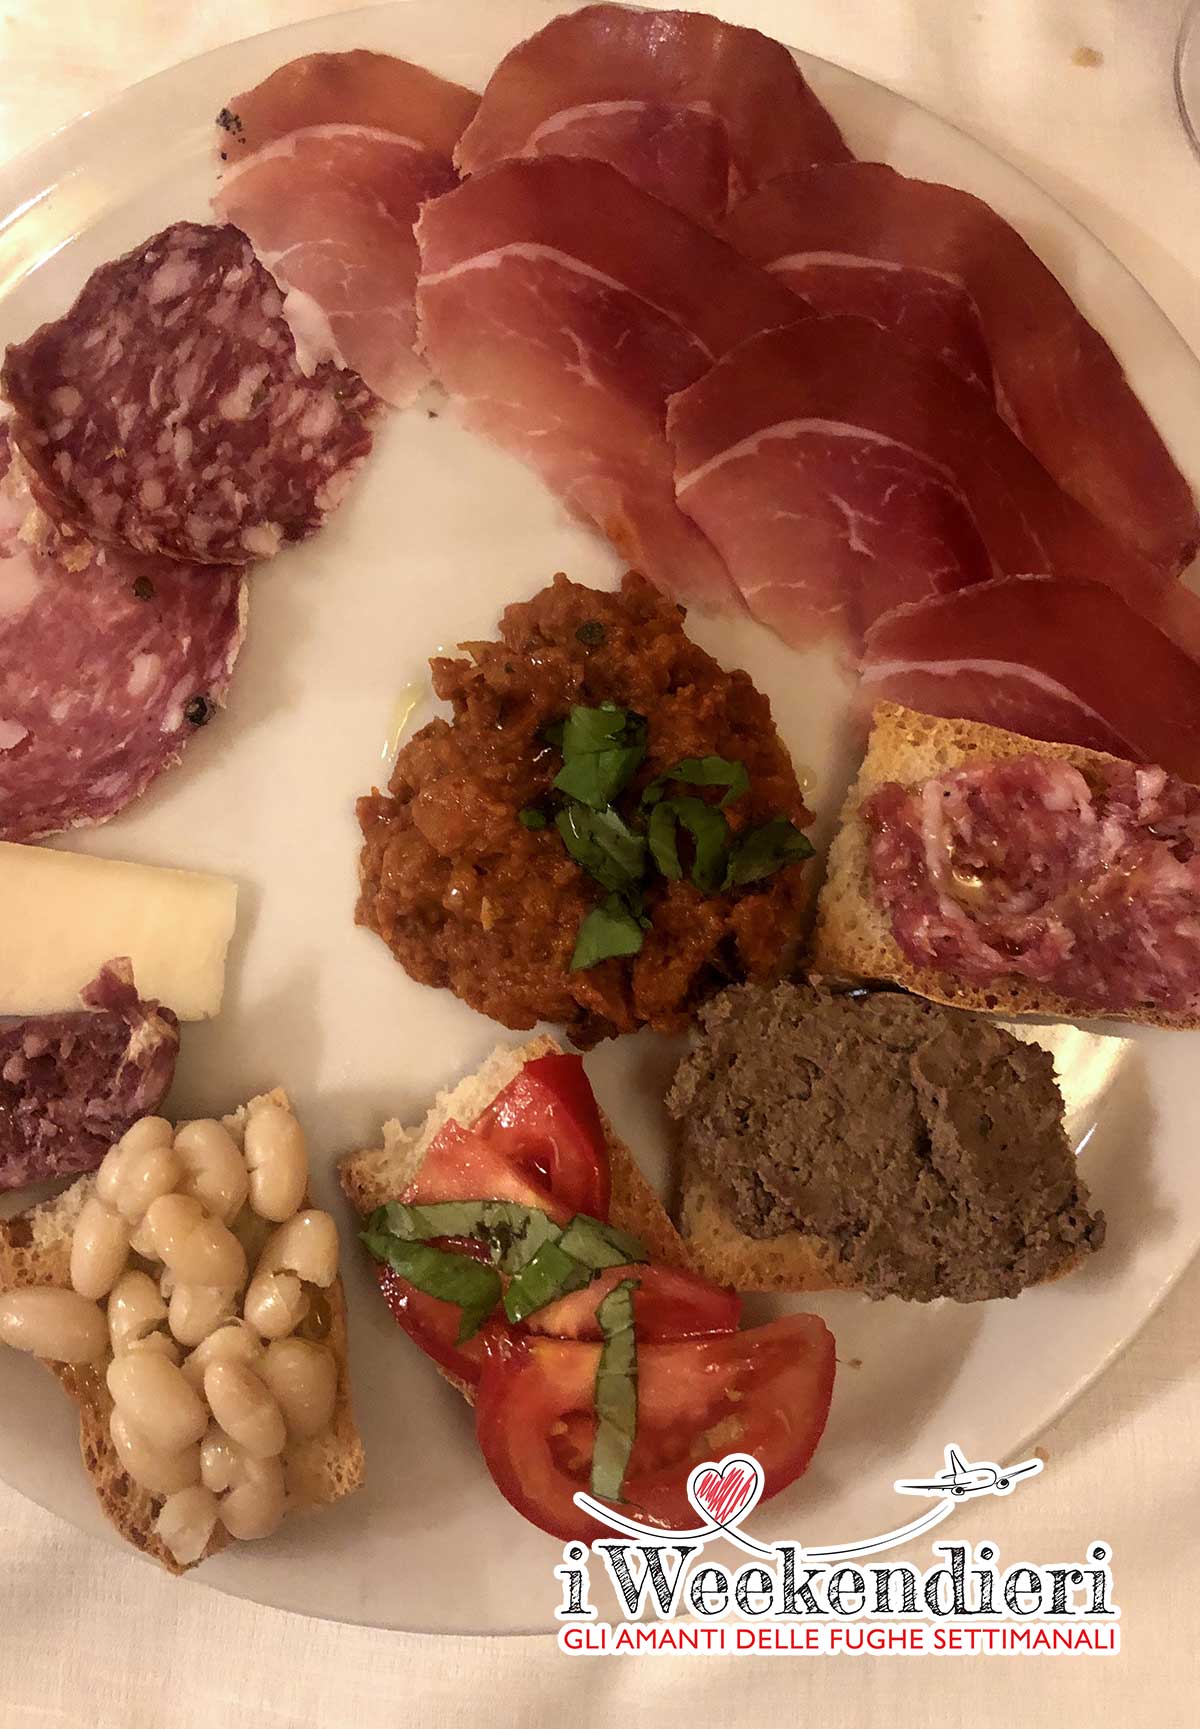 Piatti tipici Toscana 